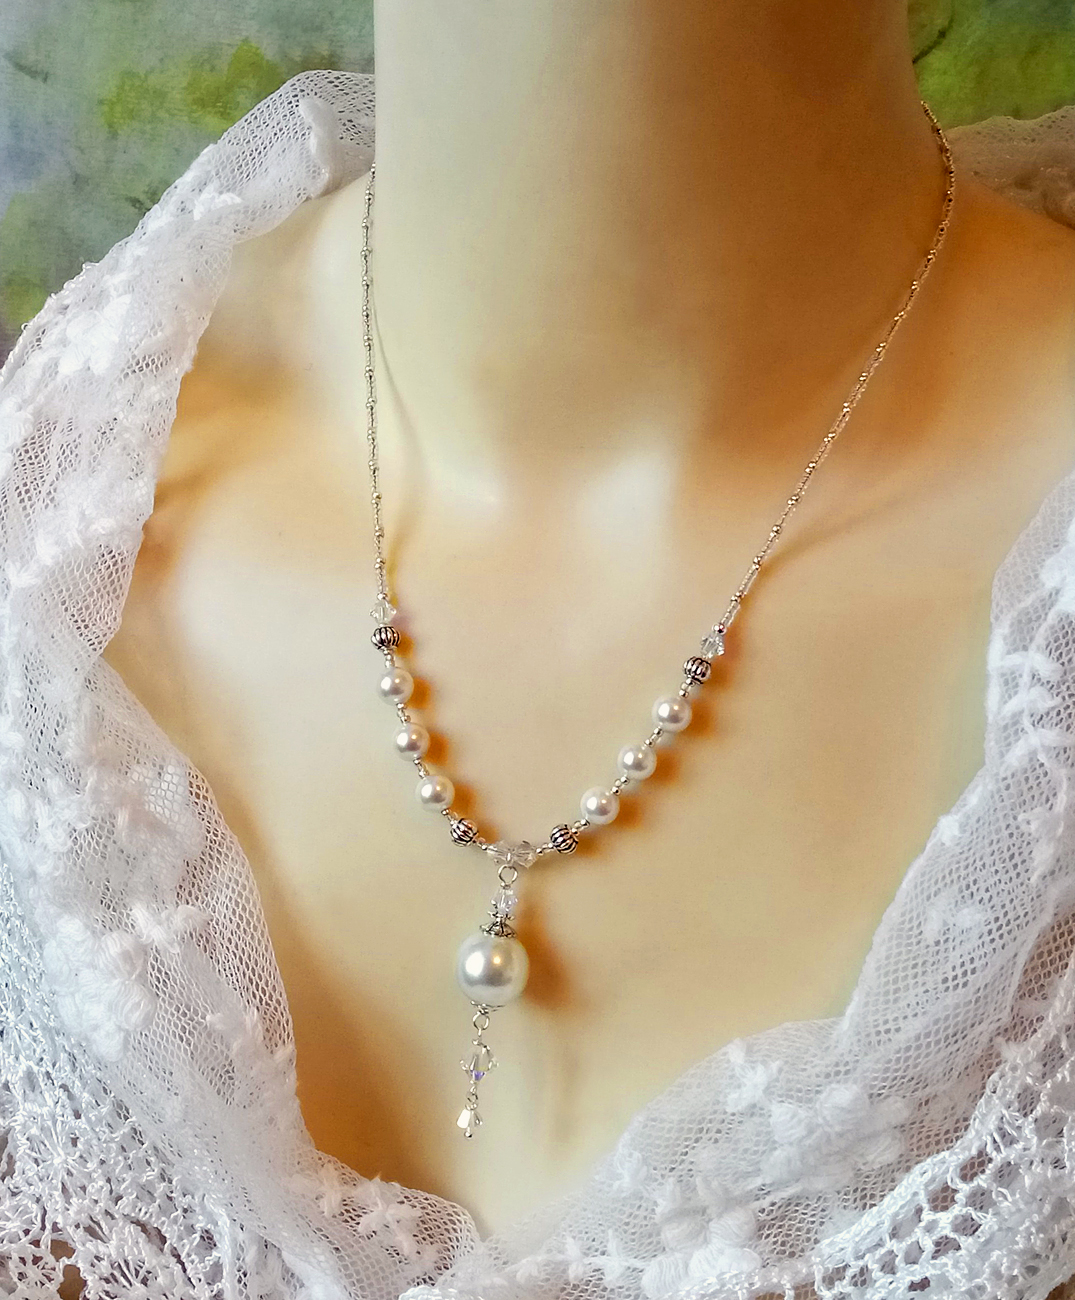 Collier pendentif Perles de Verre nacré blanc crème et Cristal de Swarovski  / Plaqué argent - Ann M. Creation Bijoux et objets textile